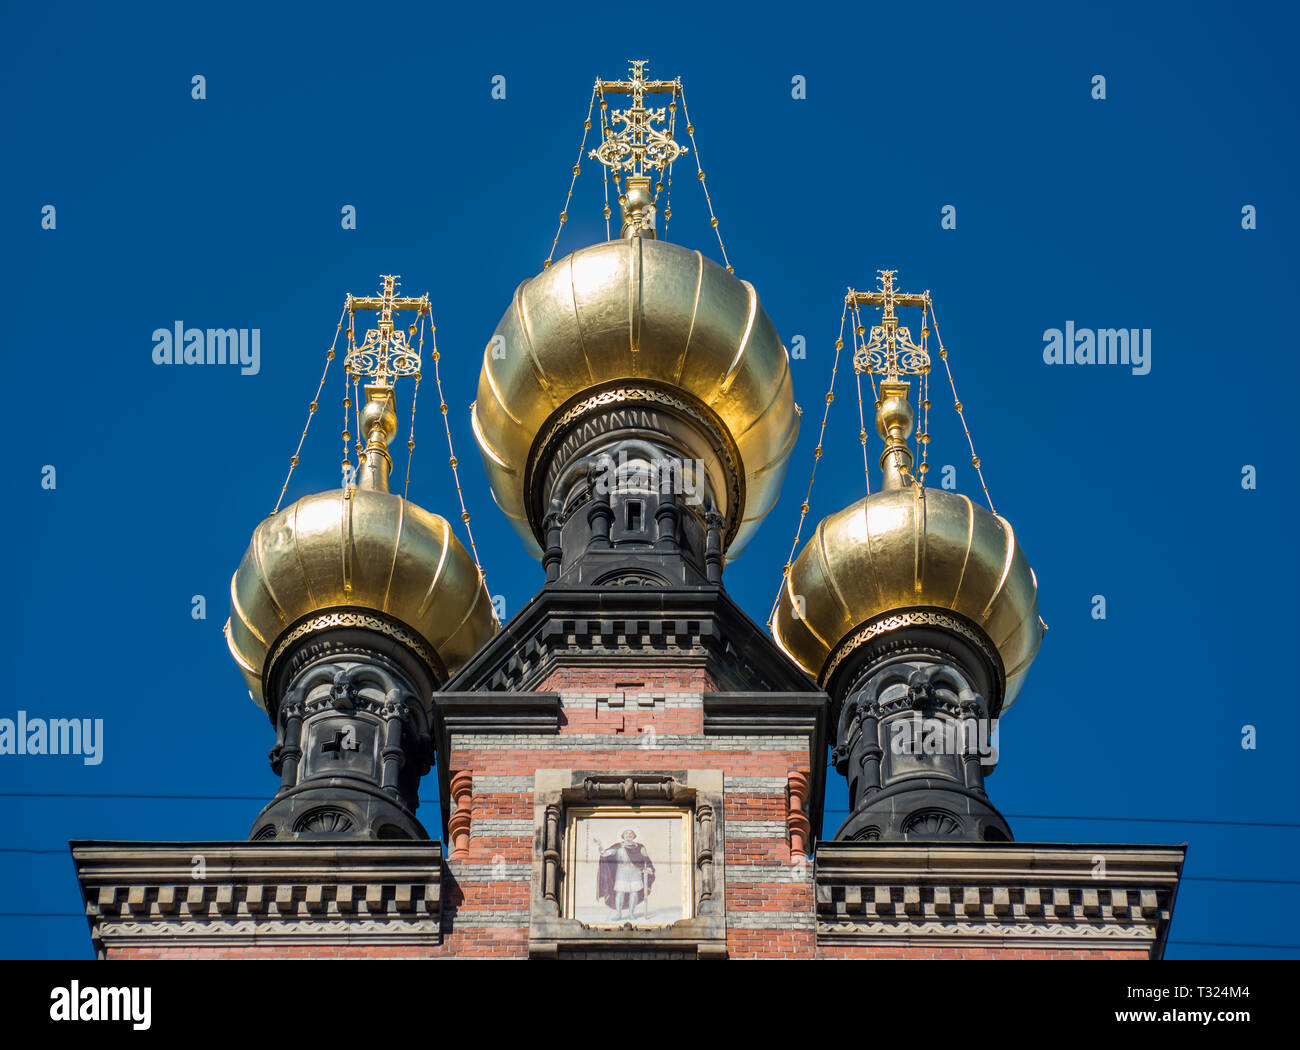 L'oignon doré coupoles de l'Église Orthodoxe Russe Alexandre Nevsky à Bredgade, Copenhague avec une icône de son saint patron. Banque D'Images